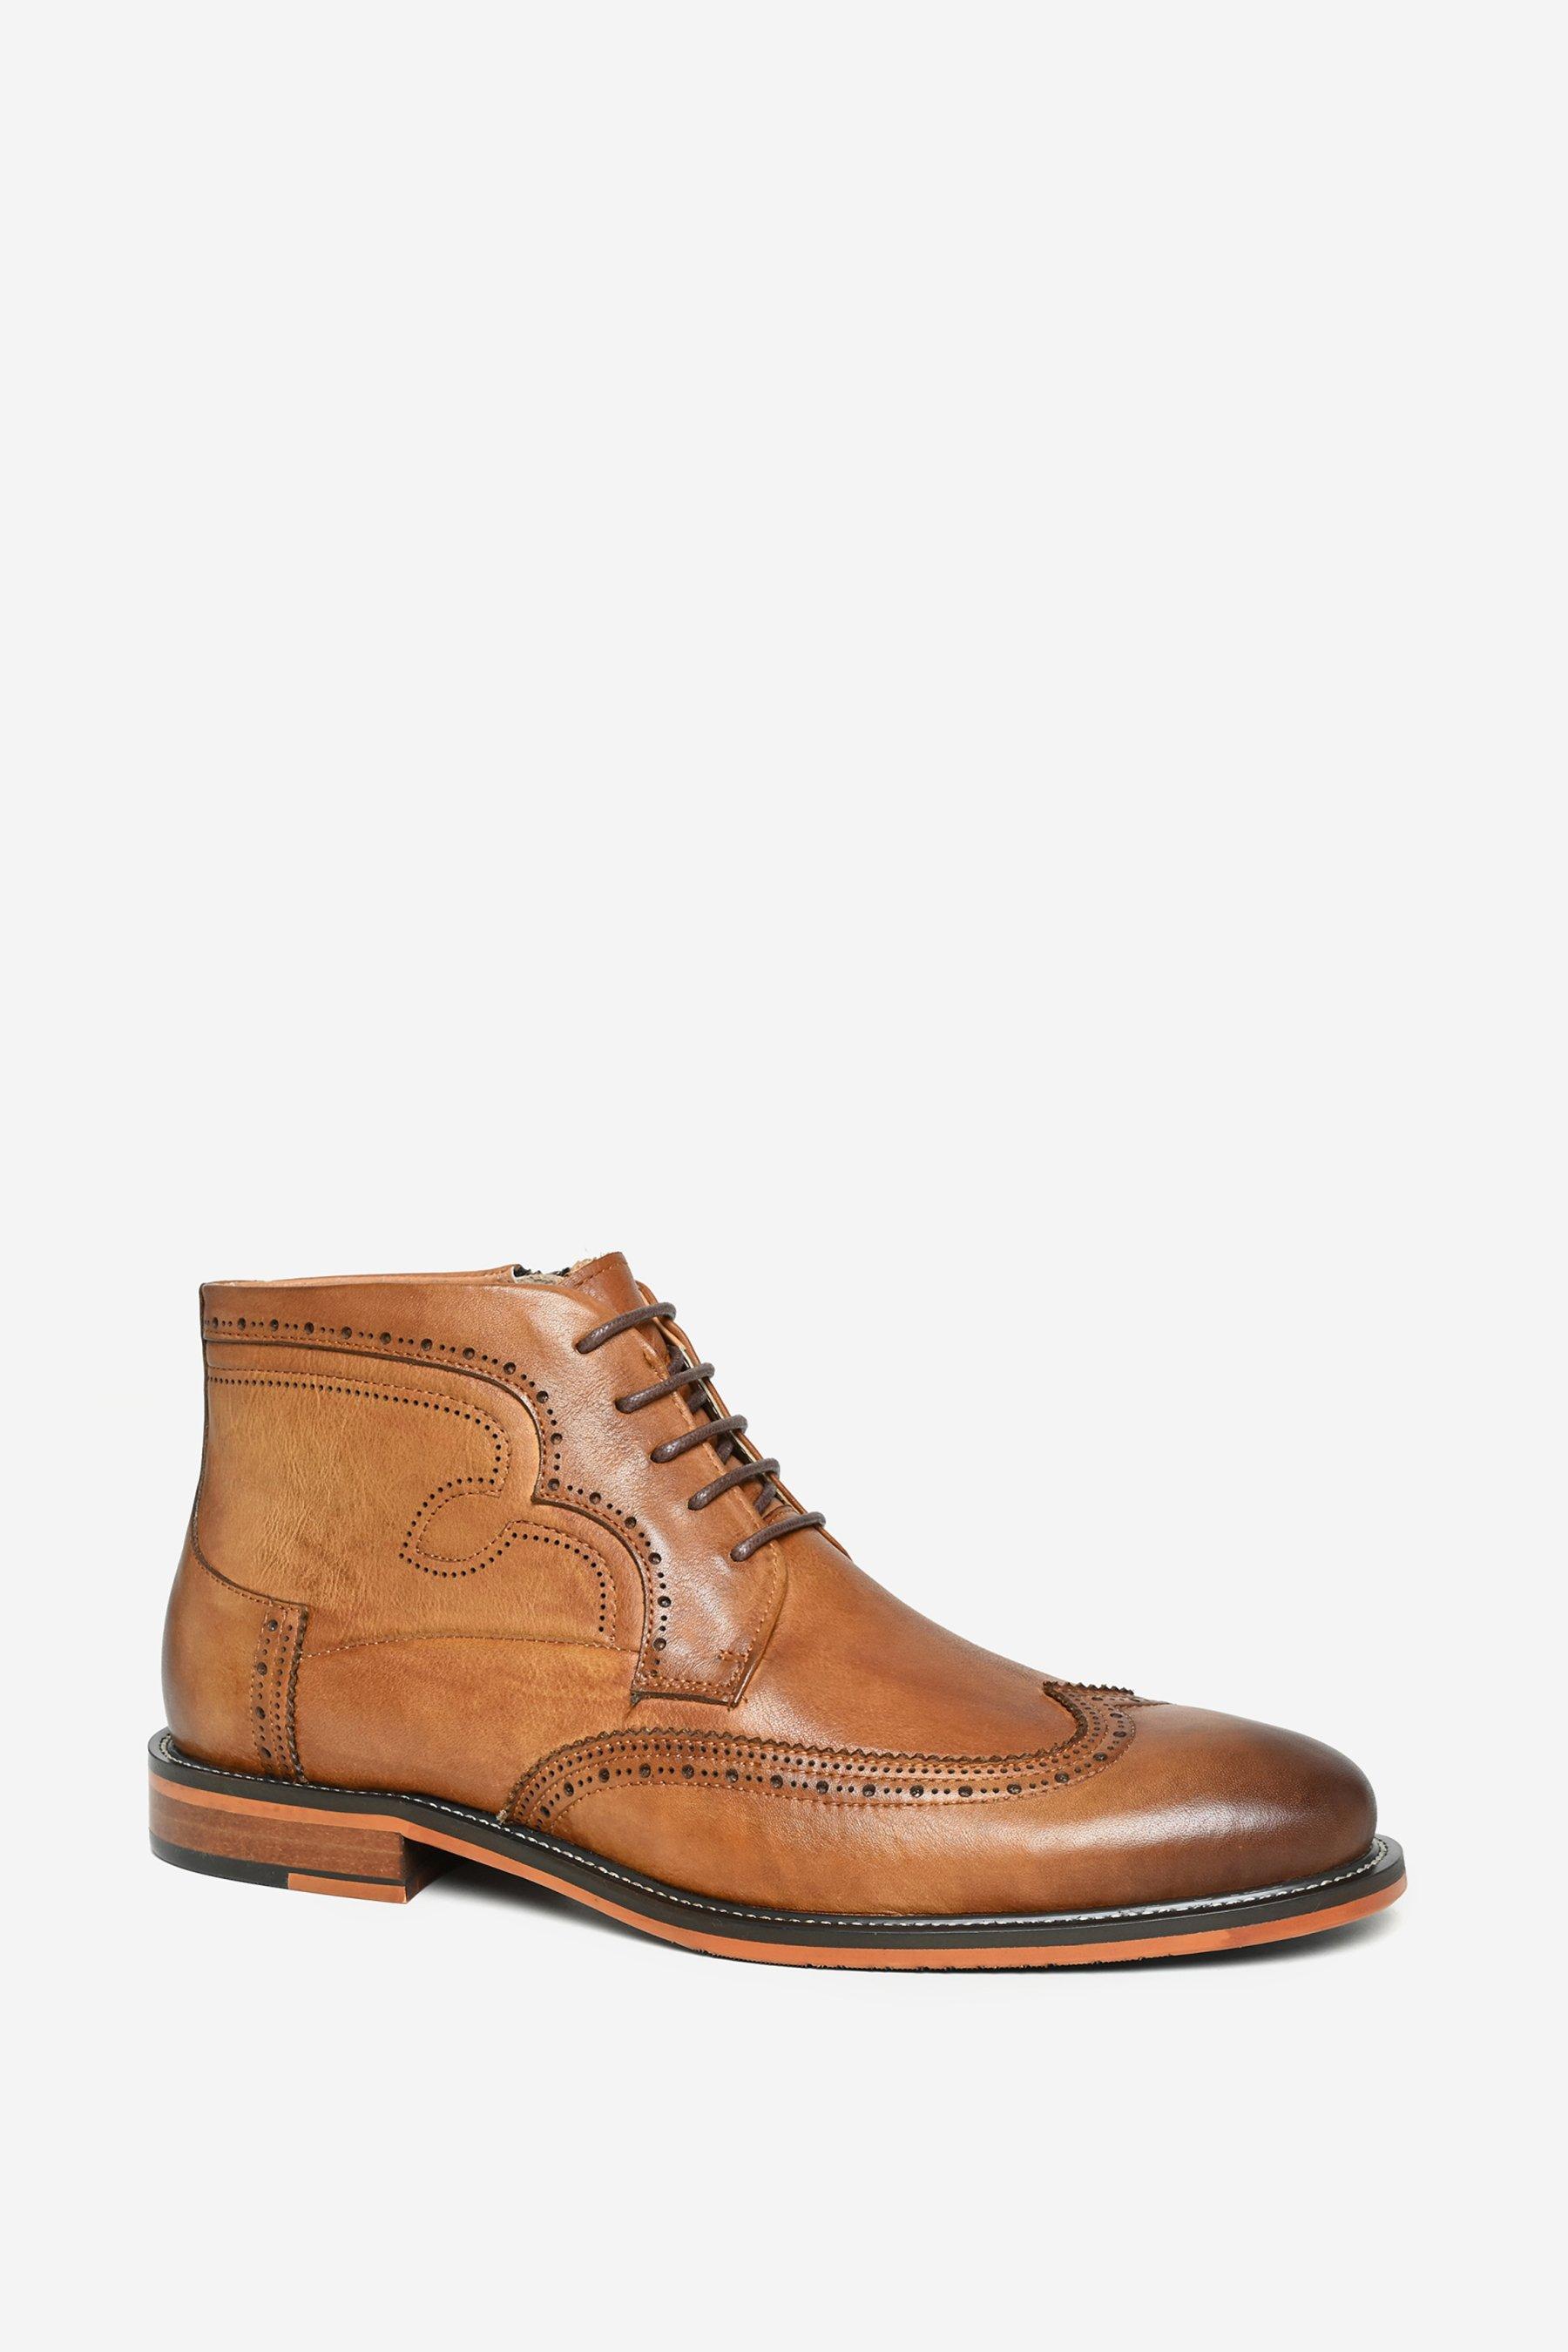 Кожаные ботинки броги премиум-класса 'Brackley' Alexander Pace, коричневый